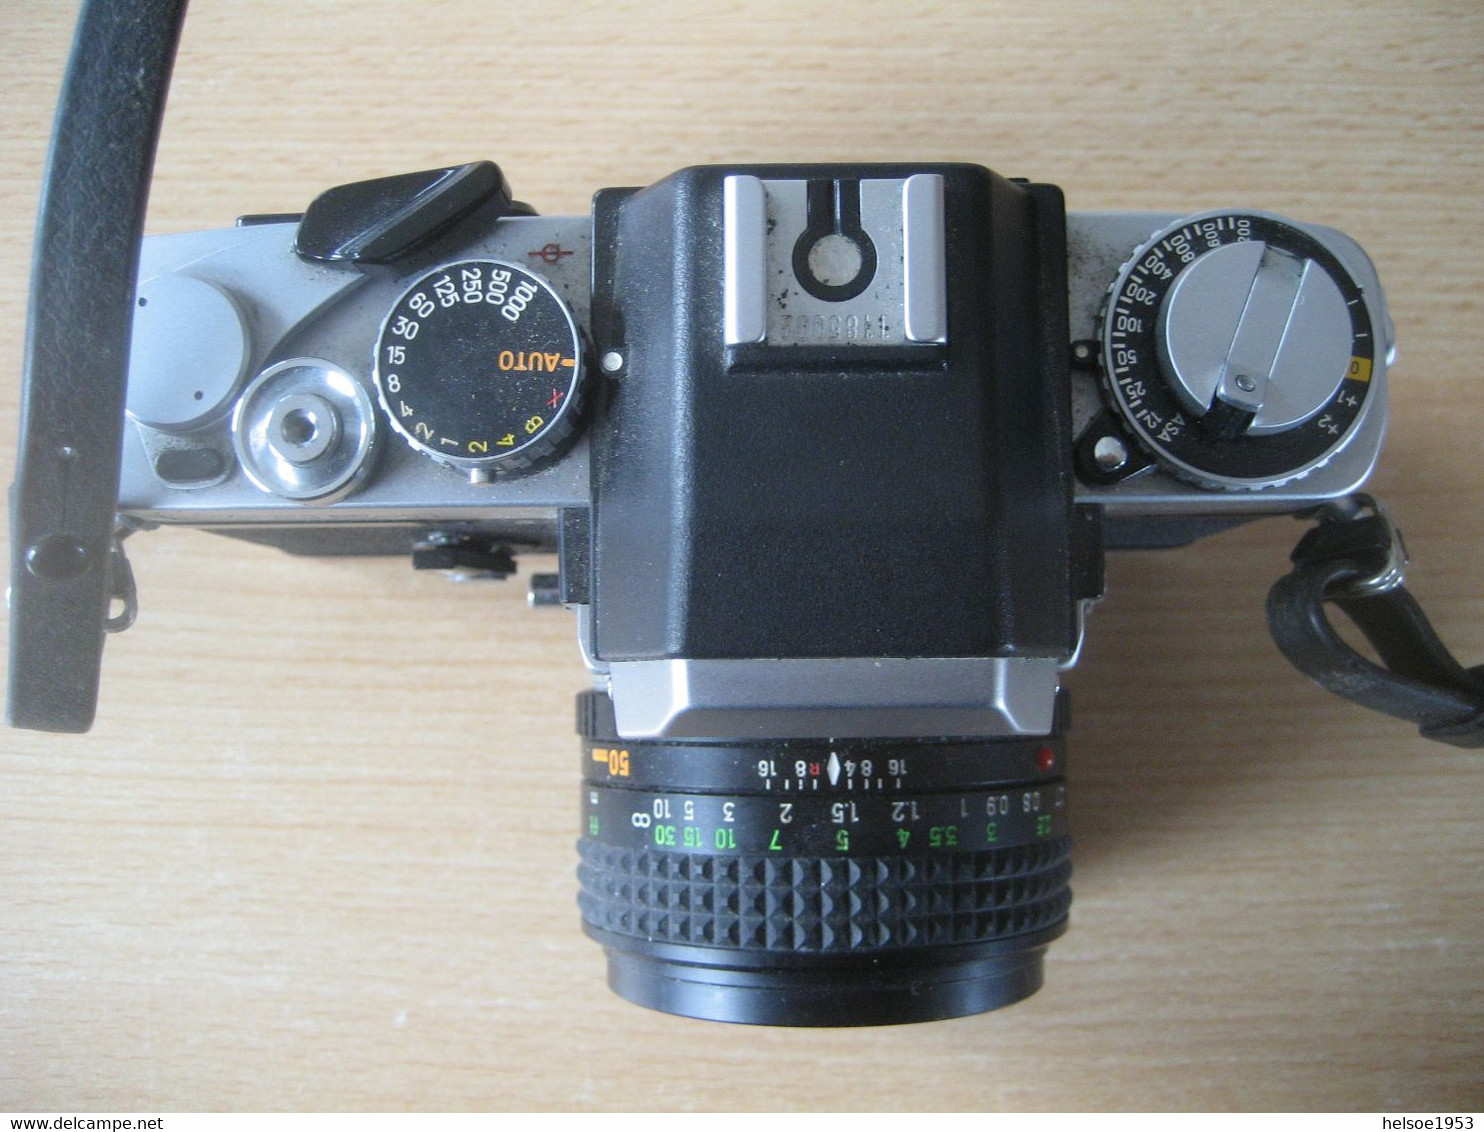 Minolta XE-1 Analoge Spiegelreflexkamera Mit Zubehör Funktionsfähig - Fotoapparate